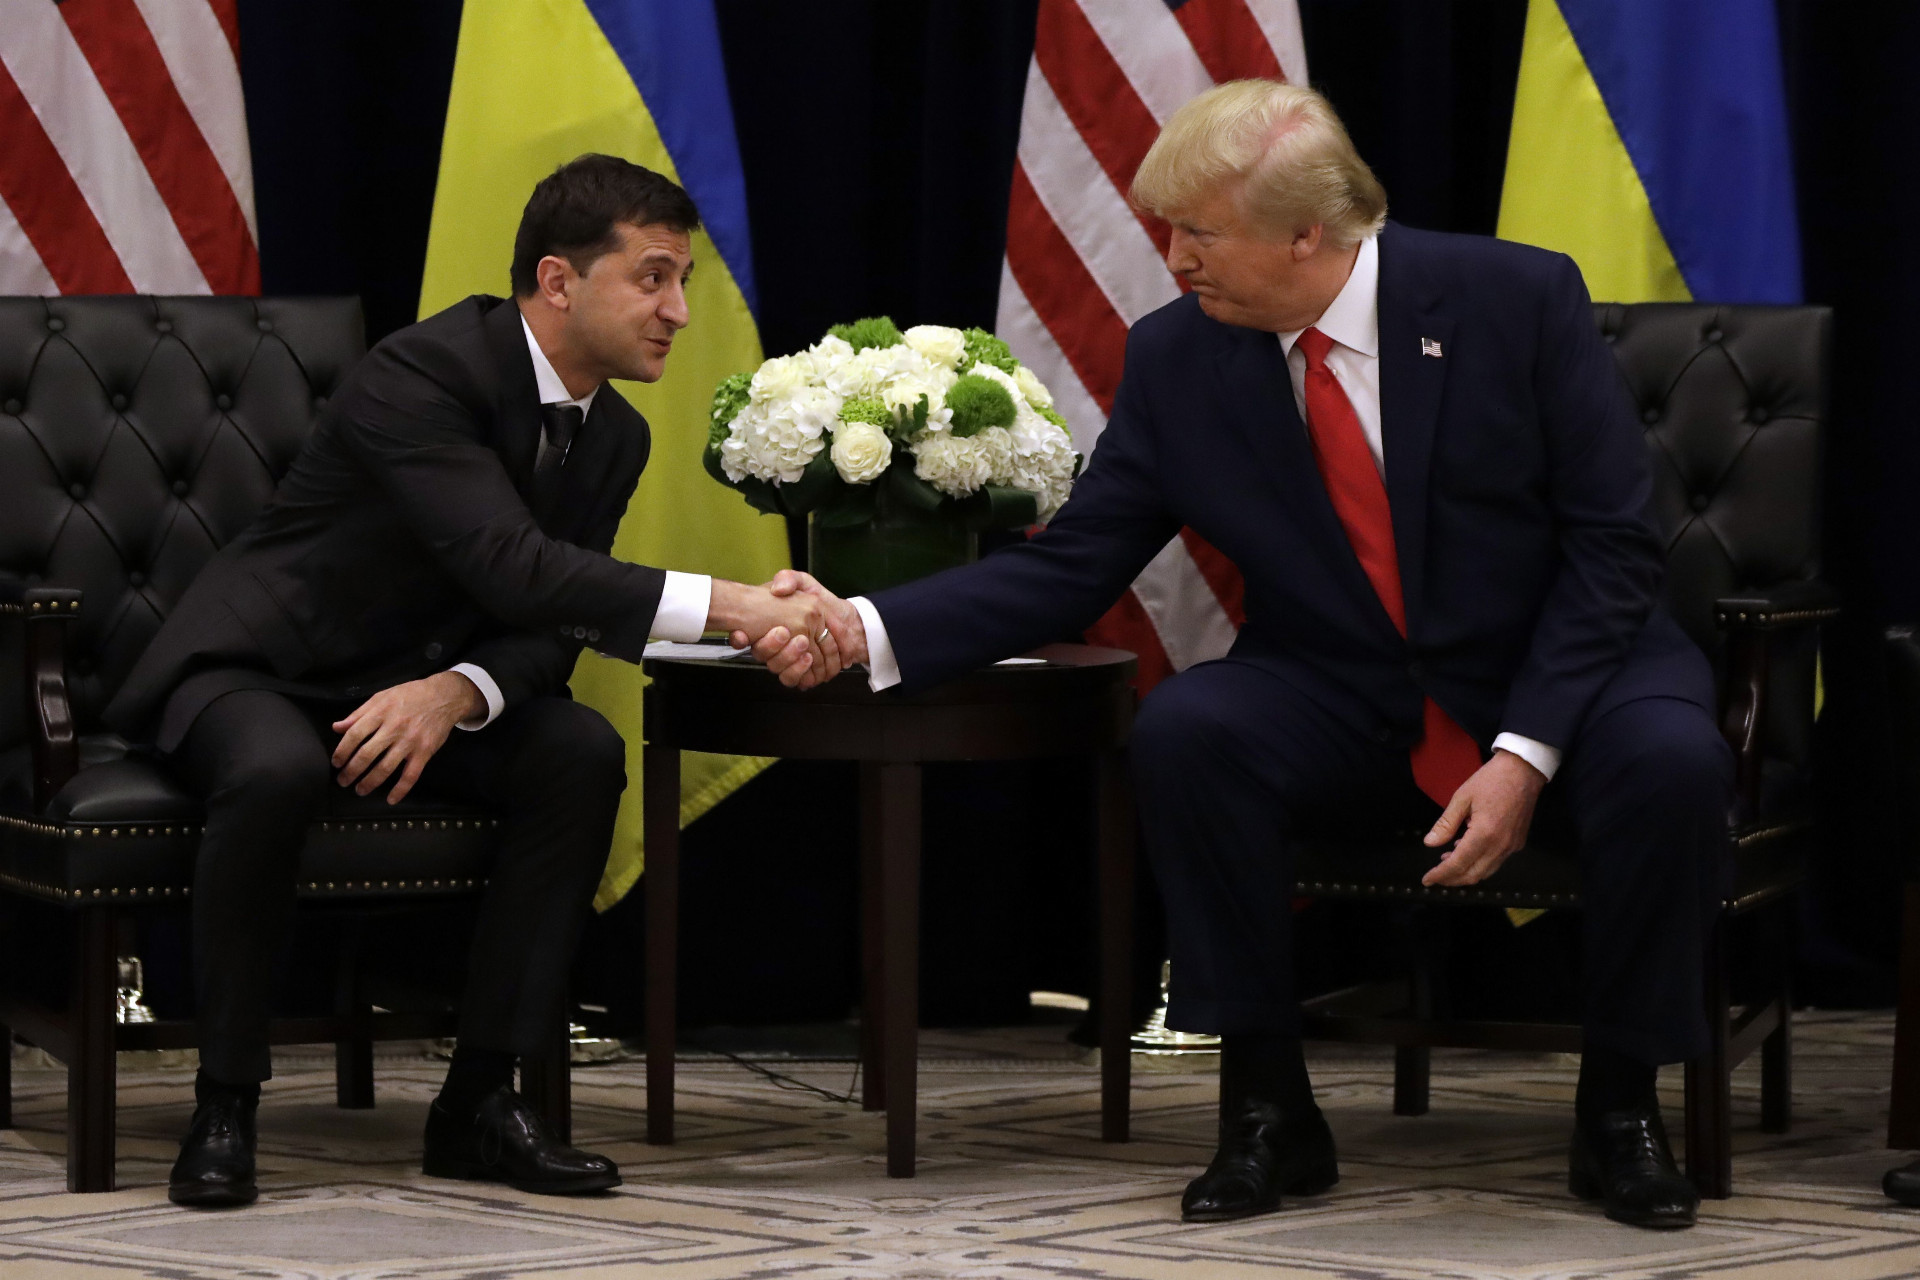 Ukrajinský prezident Volodymyr Zelenskyj (vľavo) si podáva ruku s americkým prezidentom Donaldom Trumpom na septembrovom samite OSN.